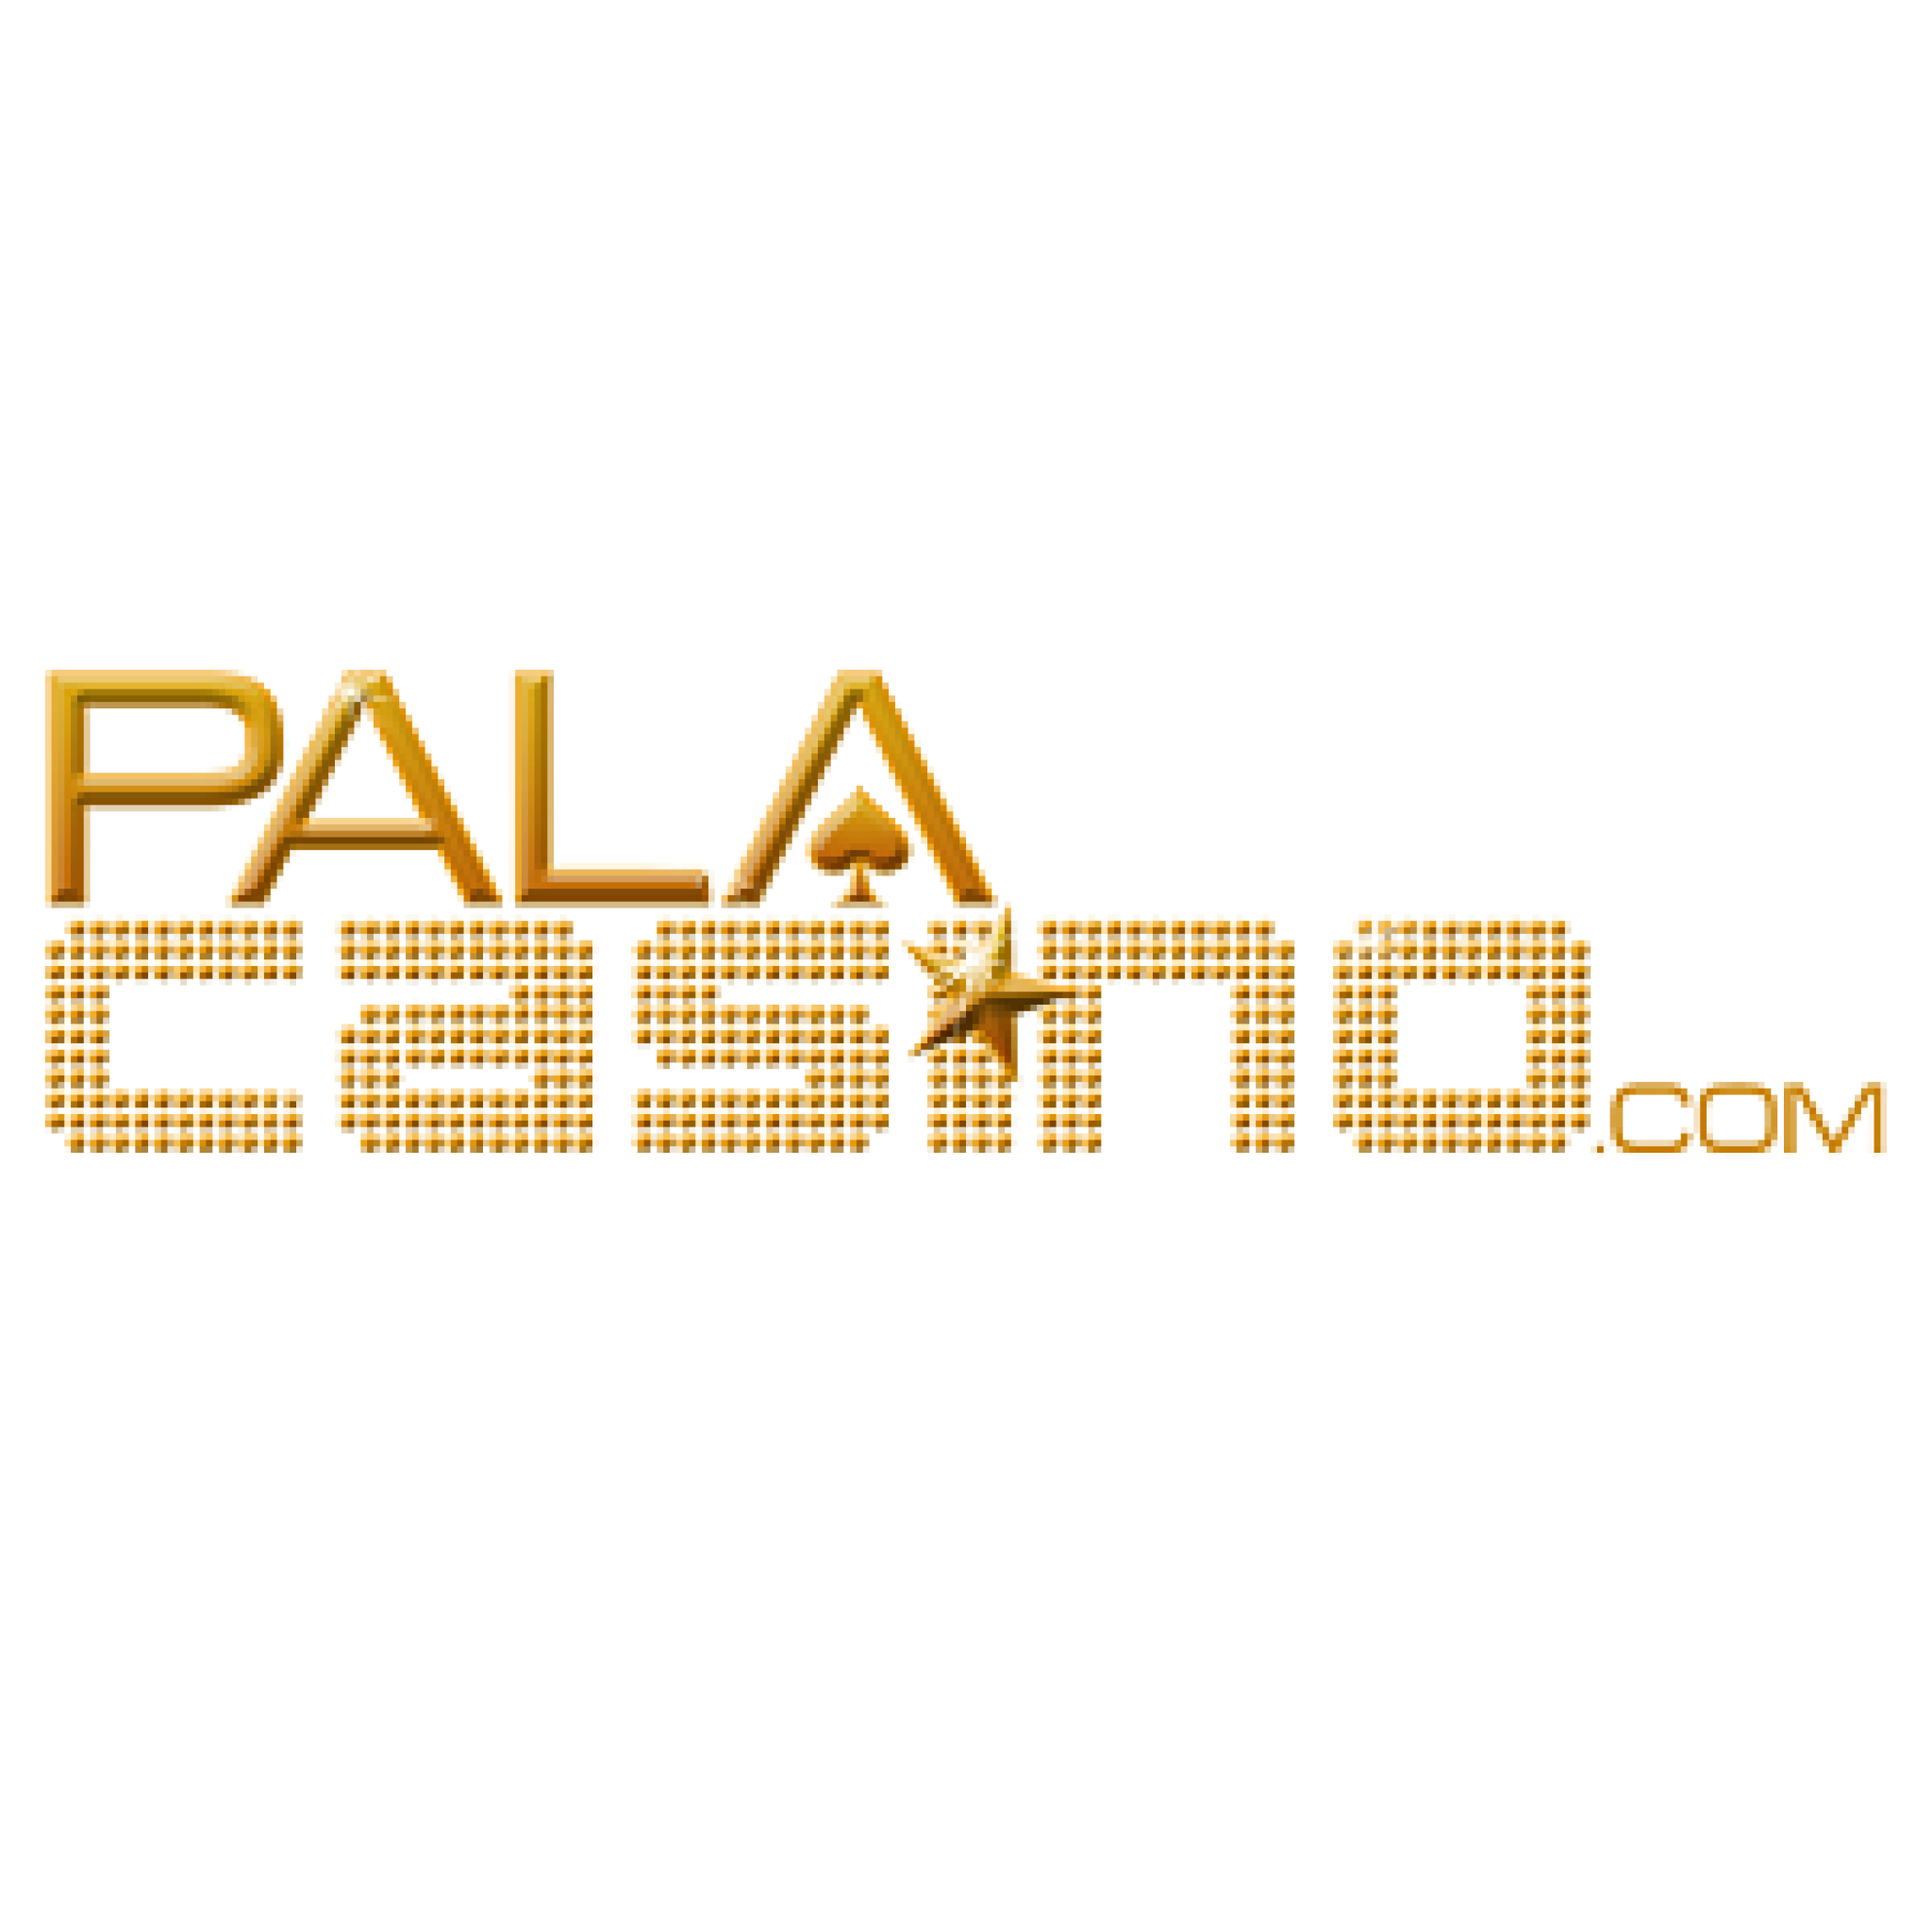 pala casino host salary